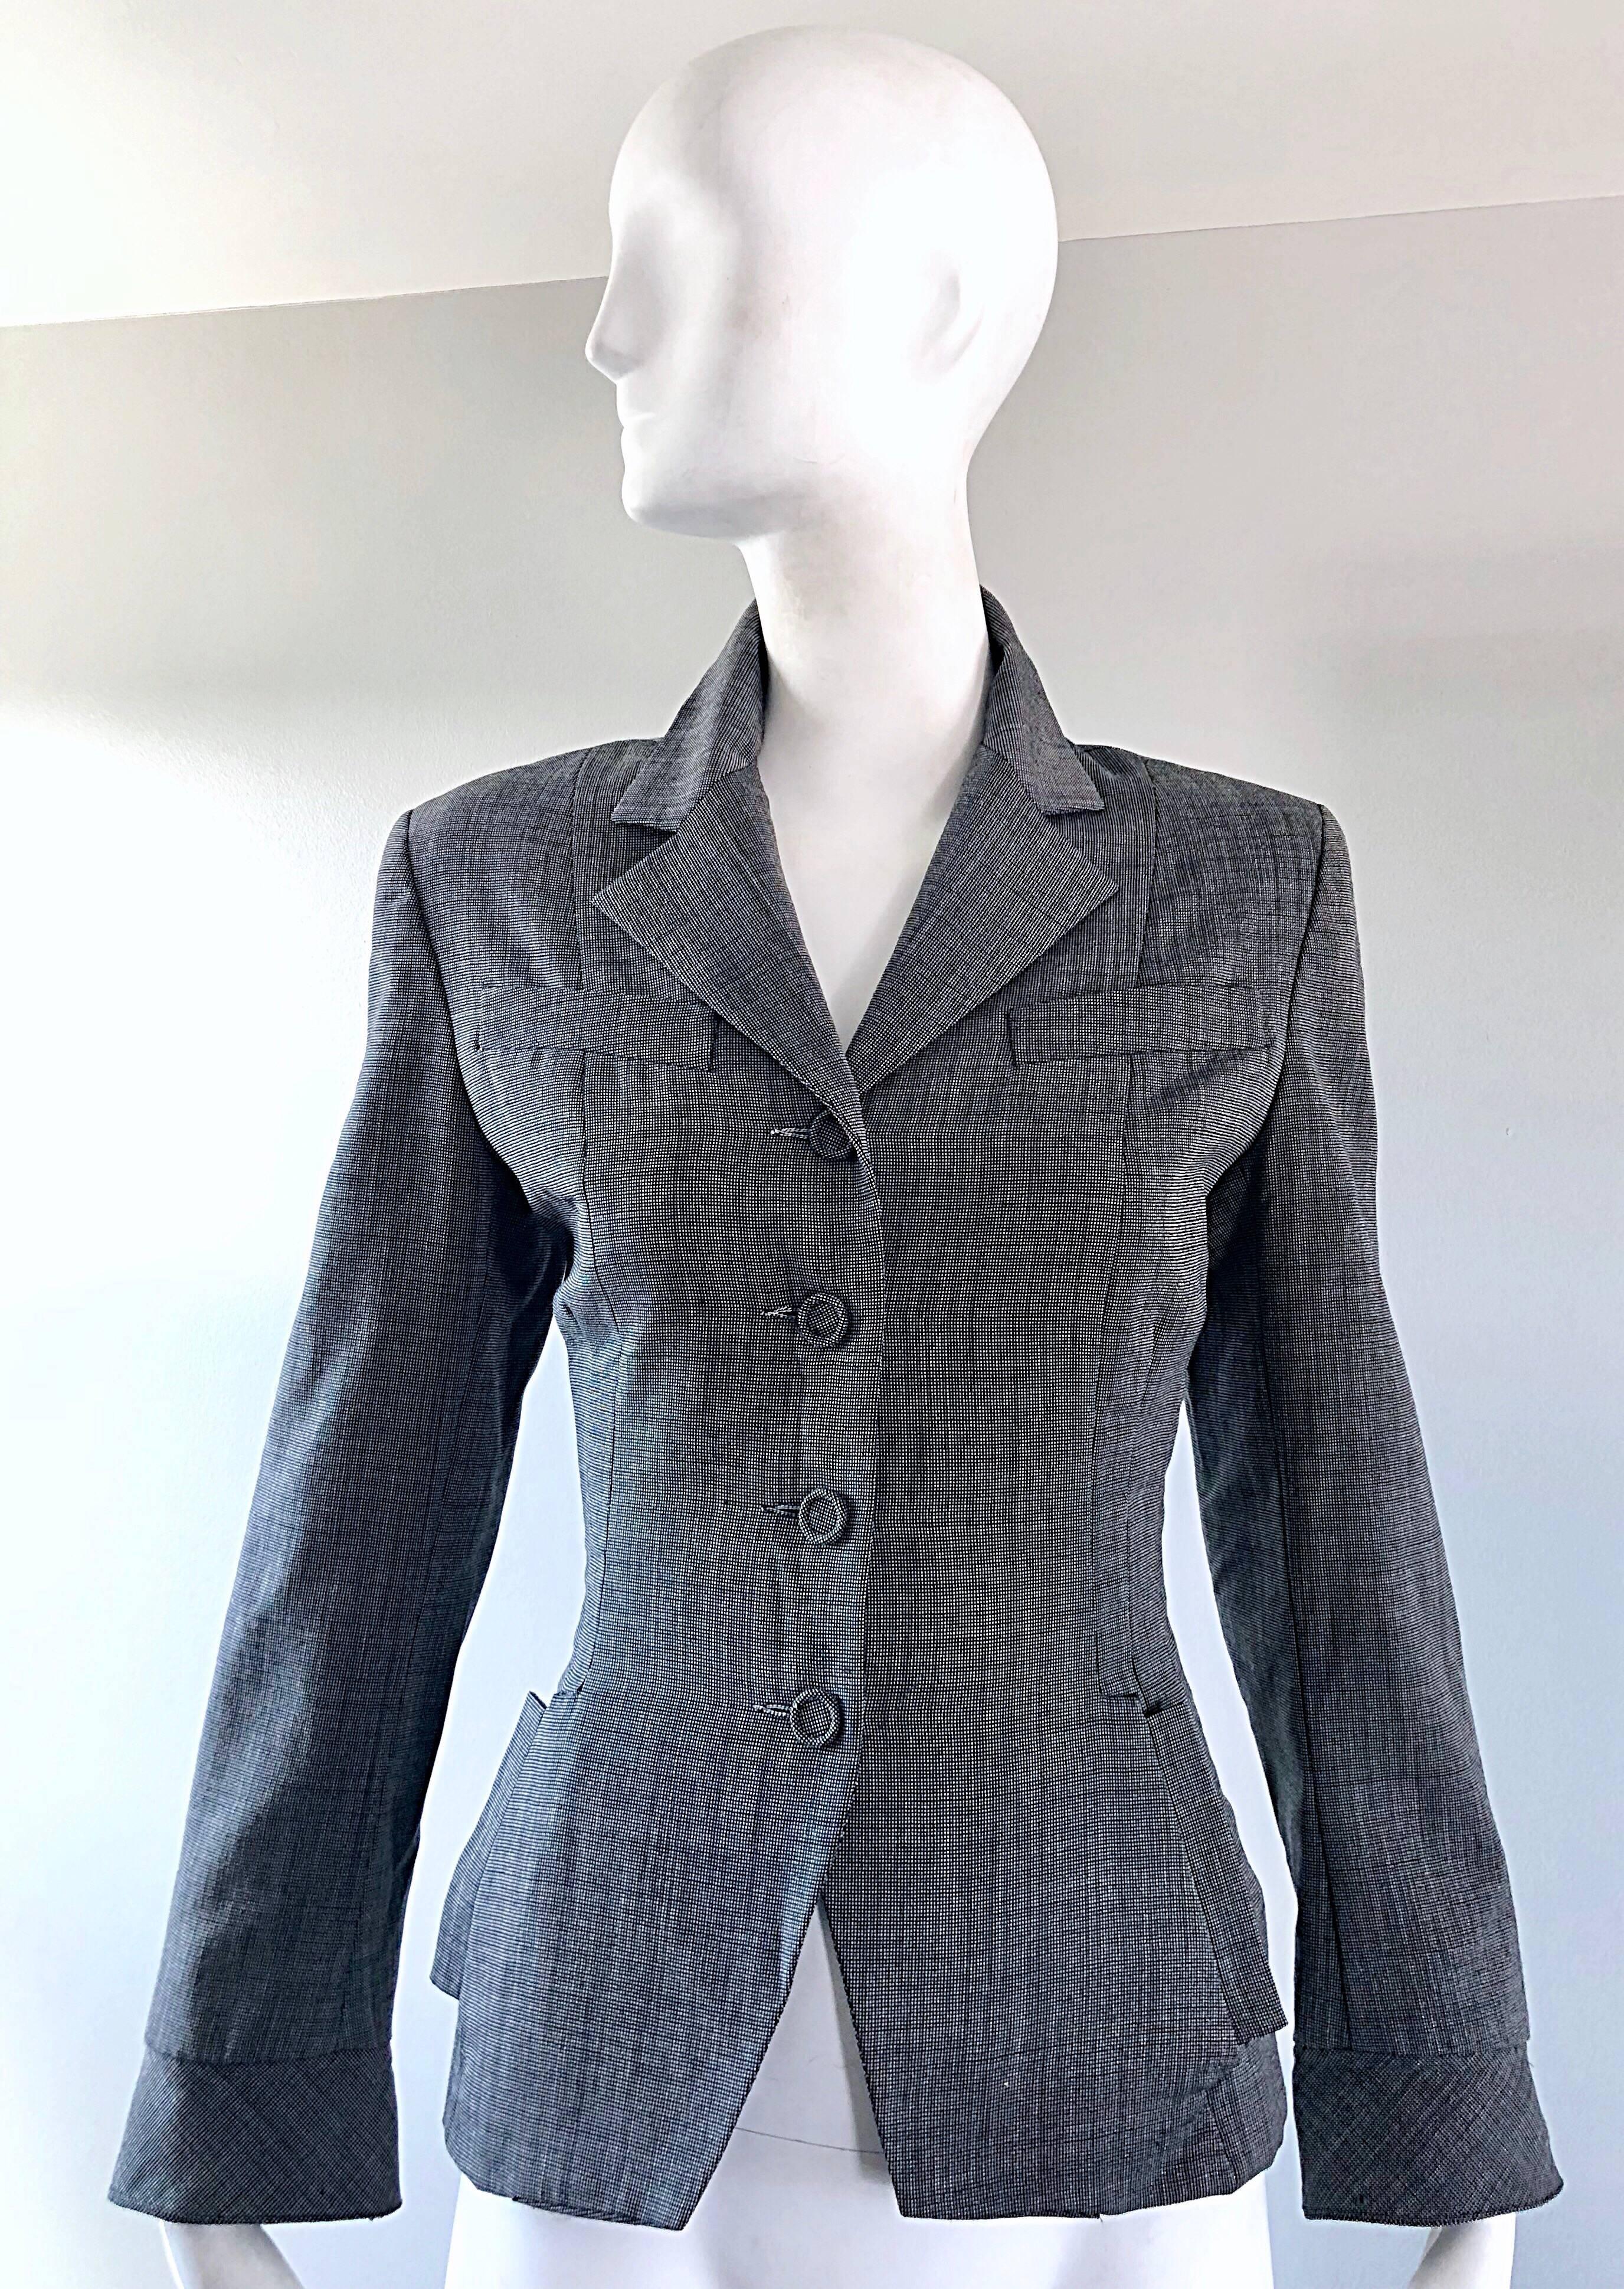 Schicke Vintage NORMA KAMALI 80s tut 40s graue Ernte Blazer Jacke! Dunkelgrau/schwarz-weiß kariert ist die perfekte Dray-Farbe! Wunderbar tailliert, mit einer Ode an die 1940er Jahre. Vier stoffbezogene Knöpfe auf der Vorderseite, mit Taschen auf